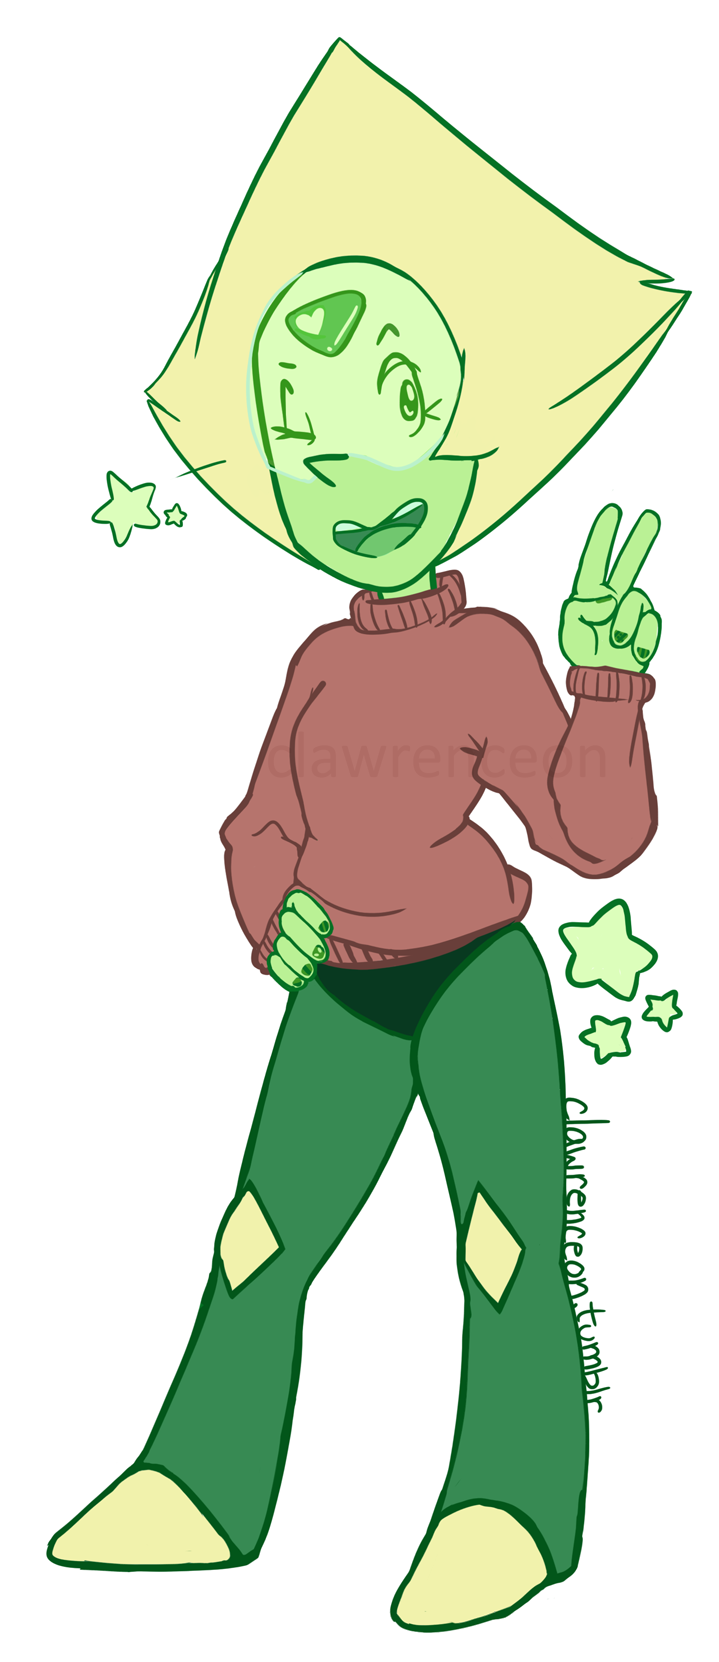 Peri-cutie rockin’ that Laughsaver’s sweater